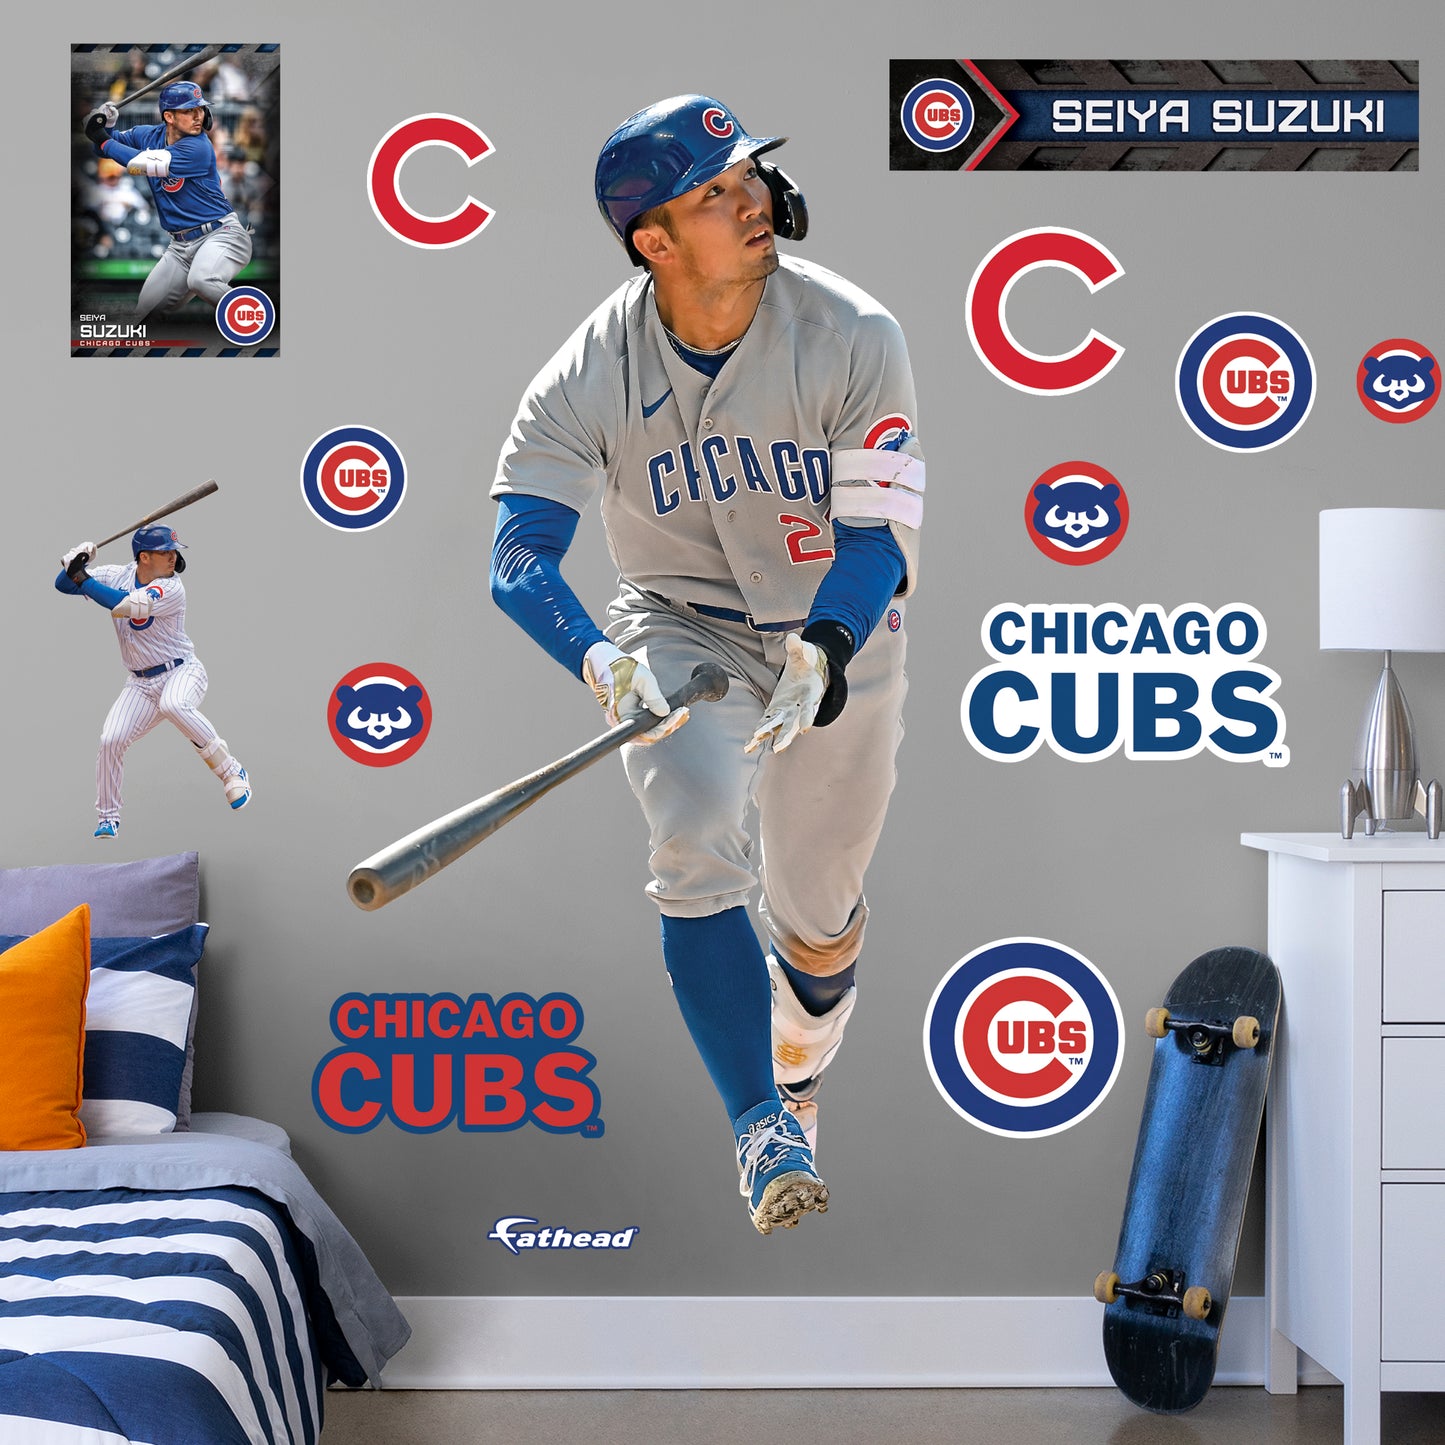 Chicago Cubs: Seiya Suzuki 2022 - Officially Licensed MLB